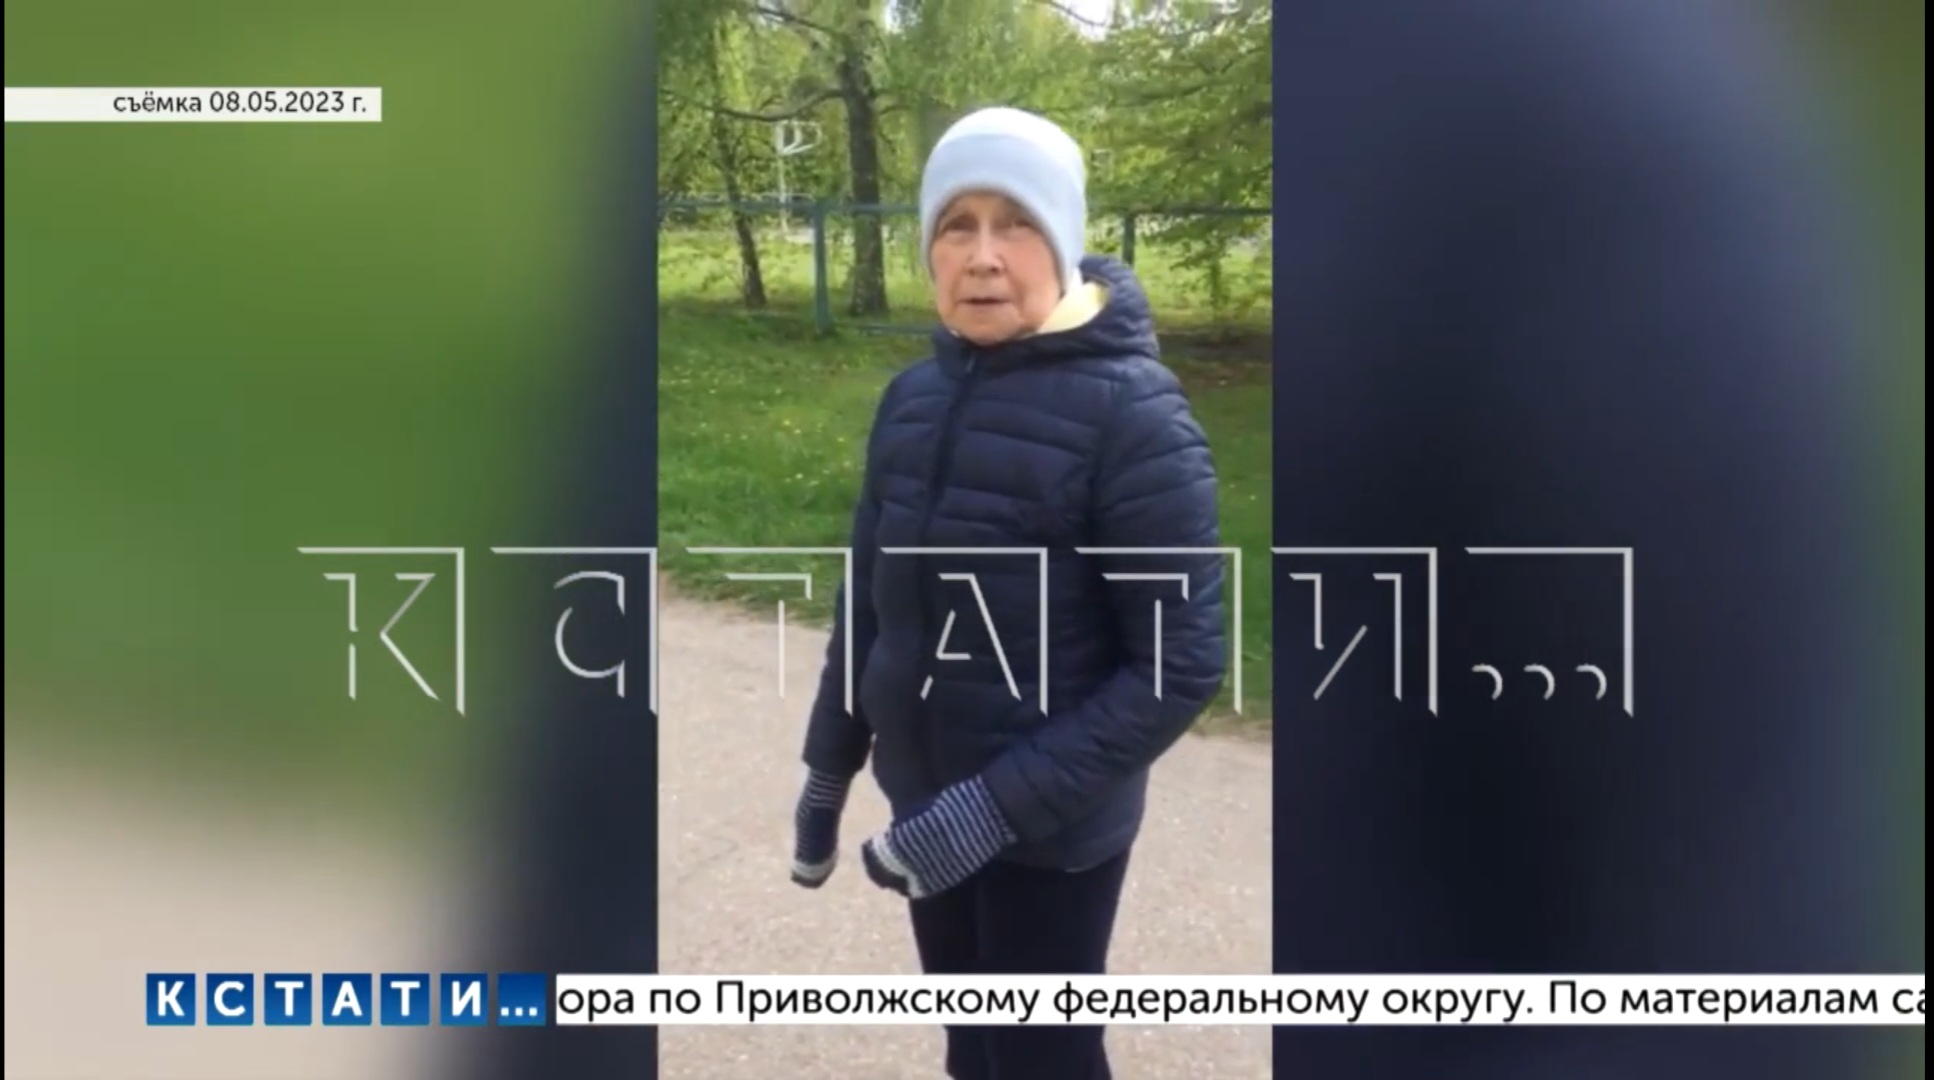 Следователи Нижегородской области проверят пансионат, где женщина стала инвалидом